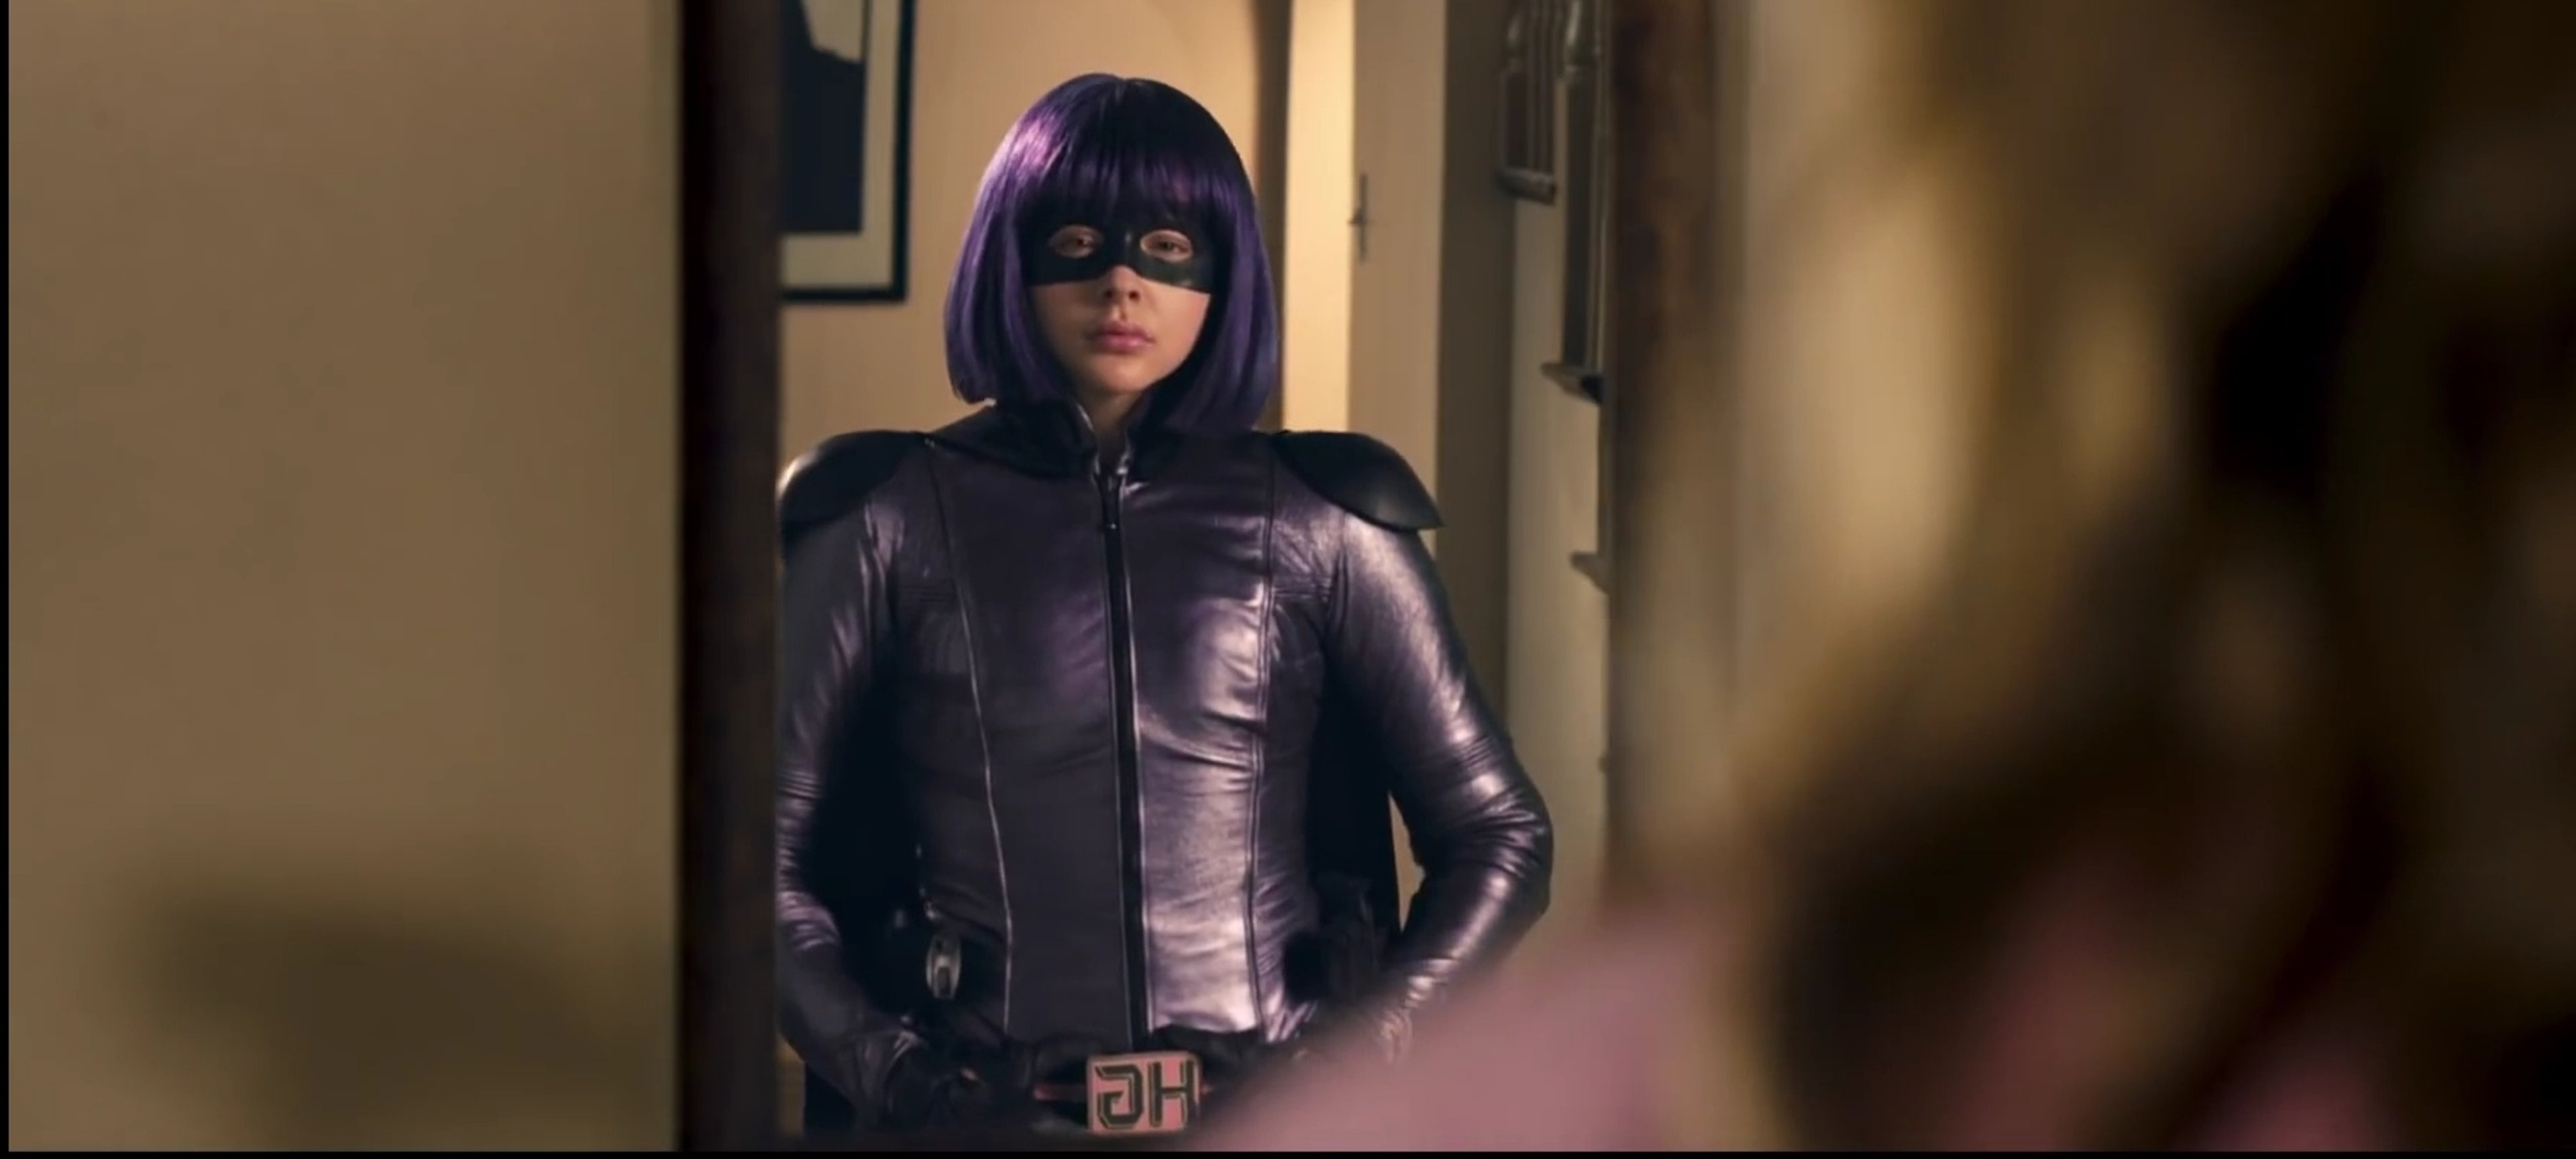 Marvel: Chloe Moretz presto tra i Supercattivi?